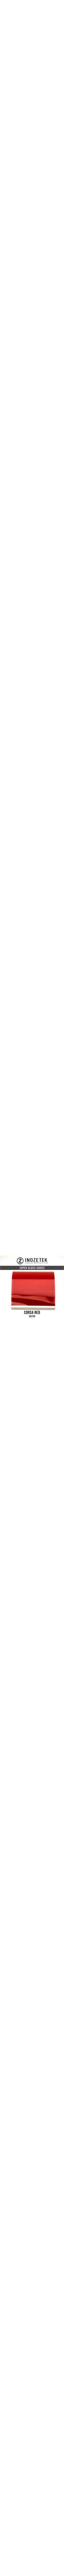 SG739 INOZETEK SUPER GLOSS CORSA RED en 1.52m